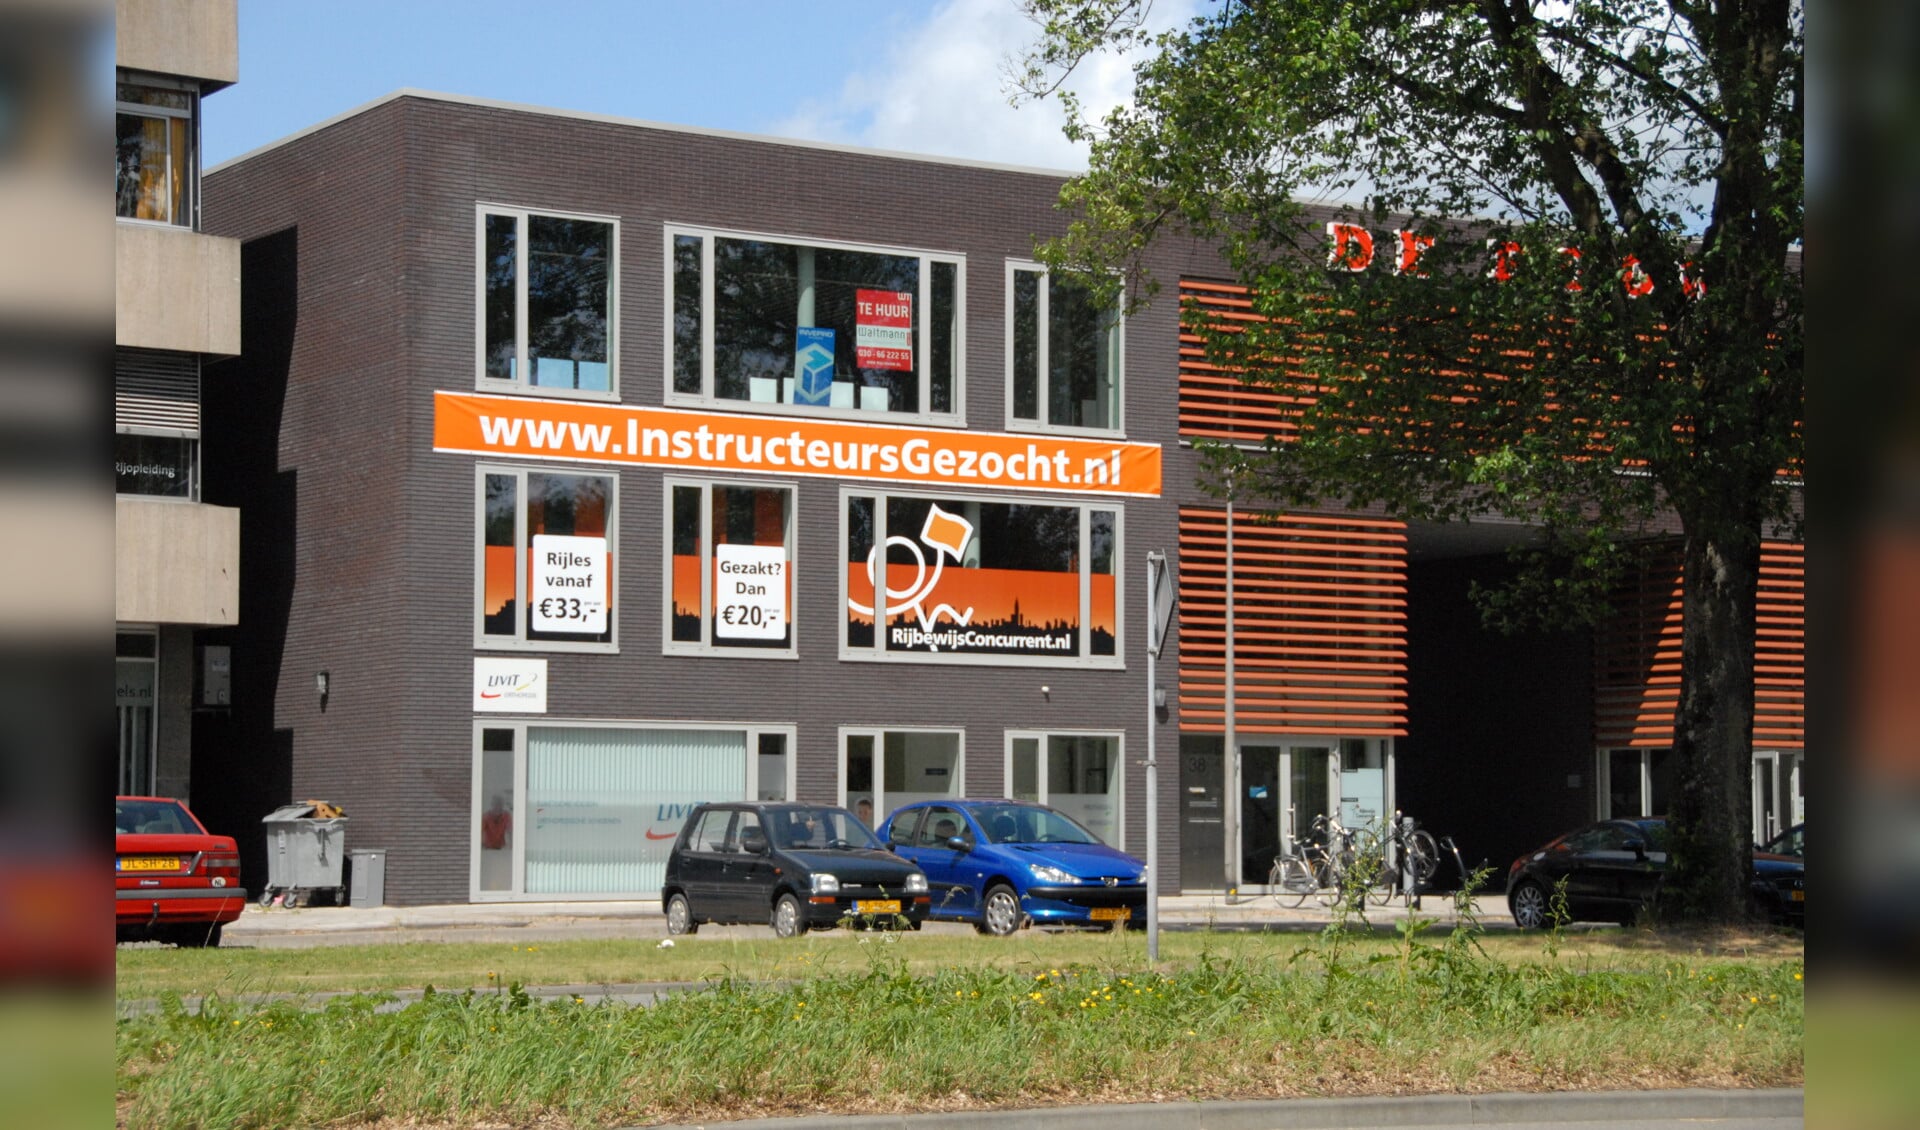 Een uiting in Utrecht van RijbewijsConcurrent tot en met 2012.